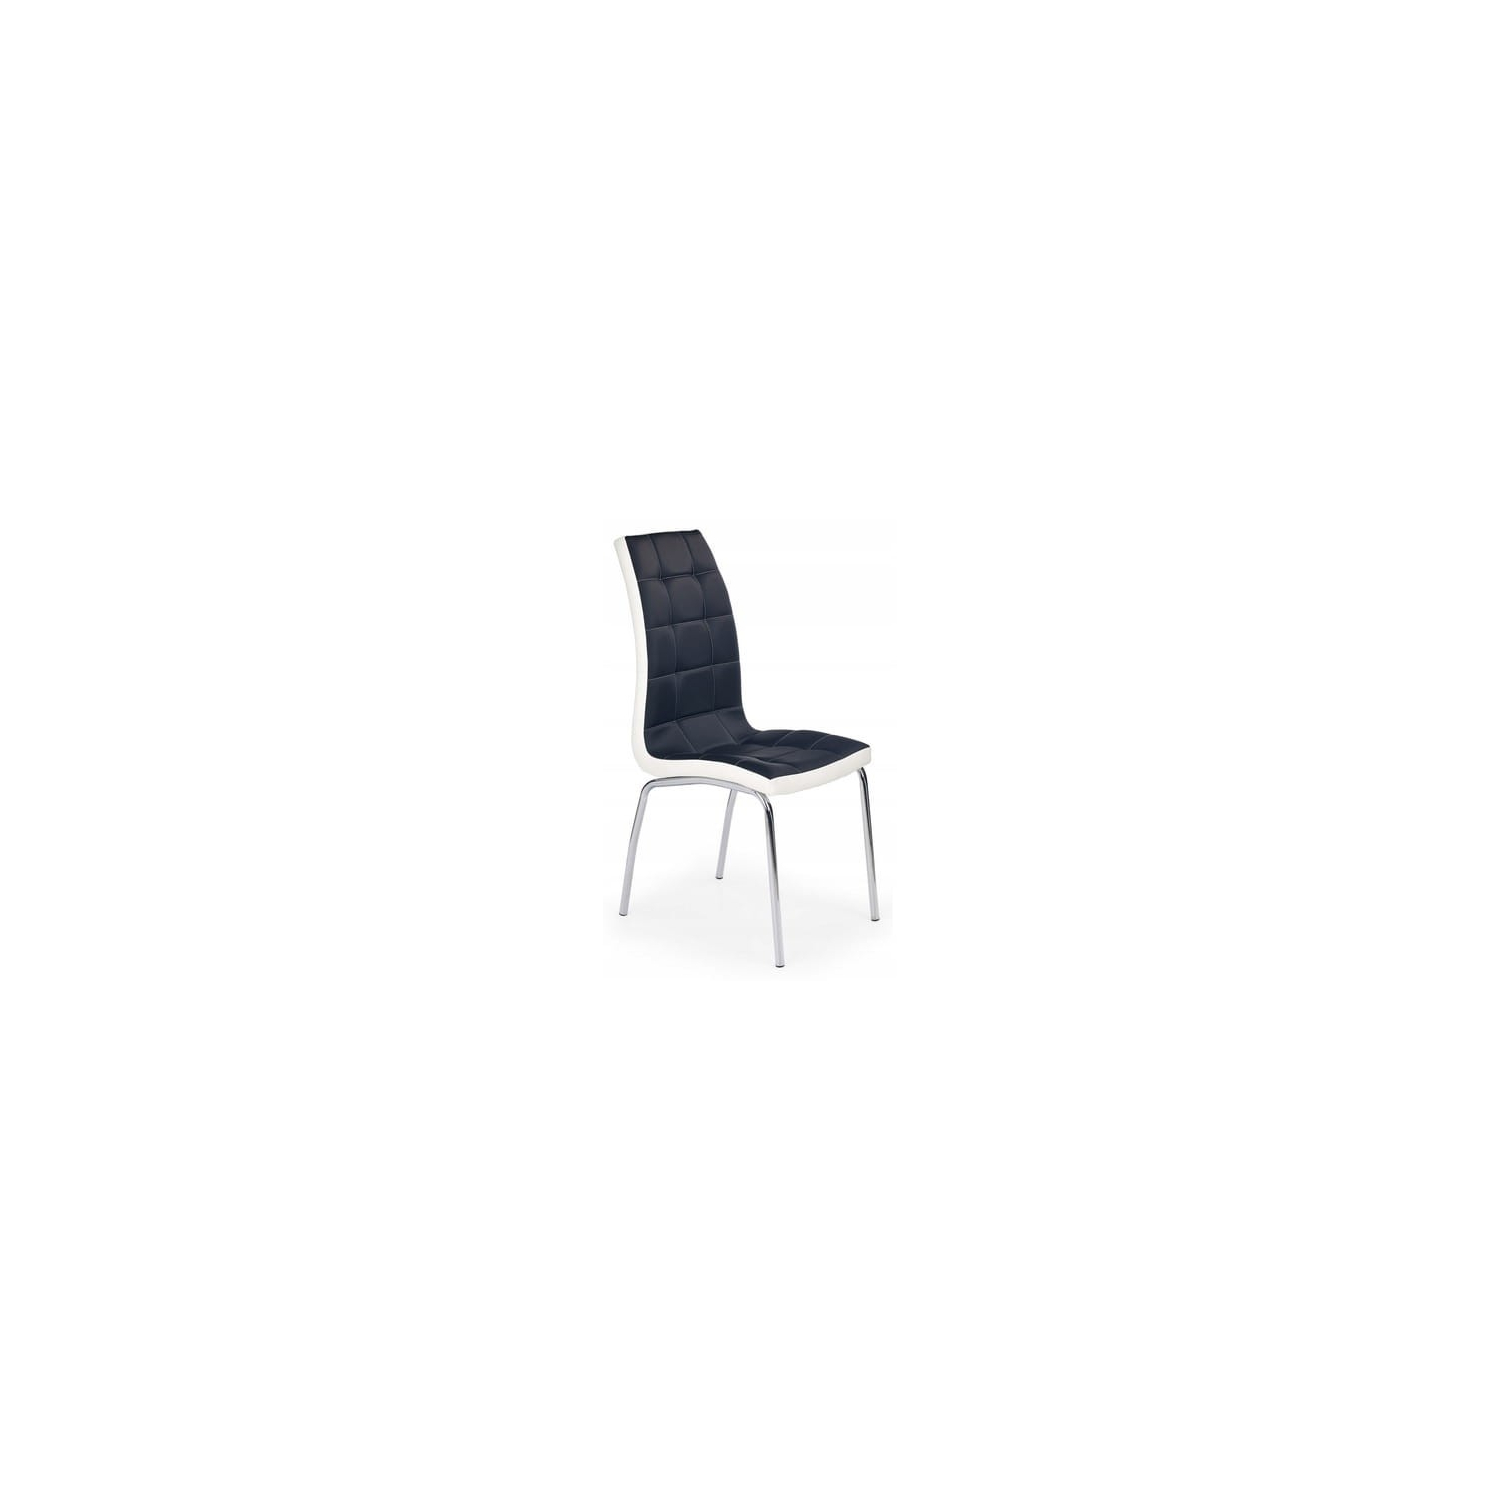 Krzesło K186 Czarny/Biały